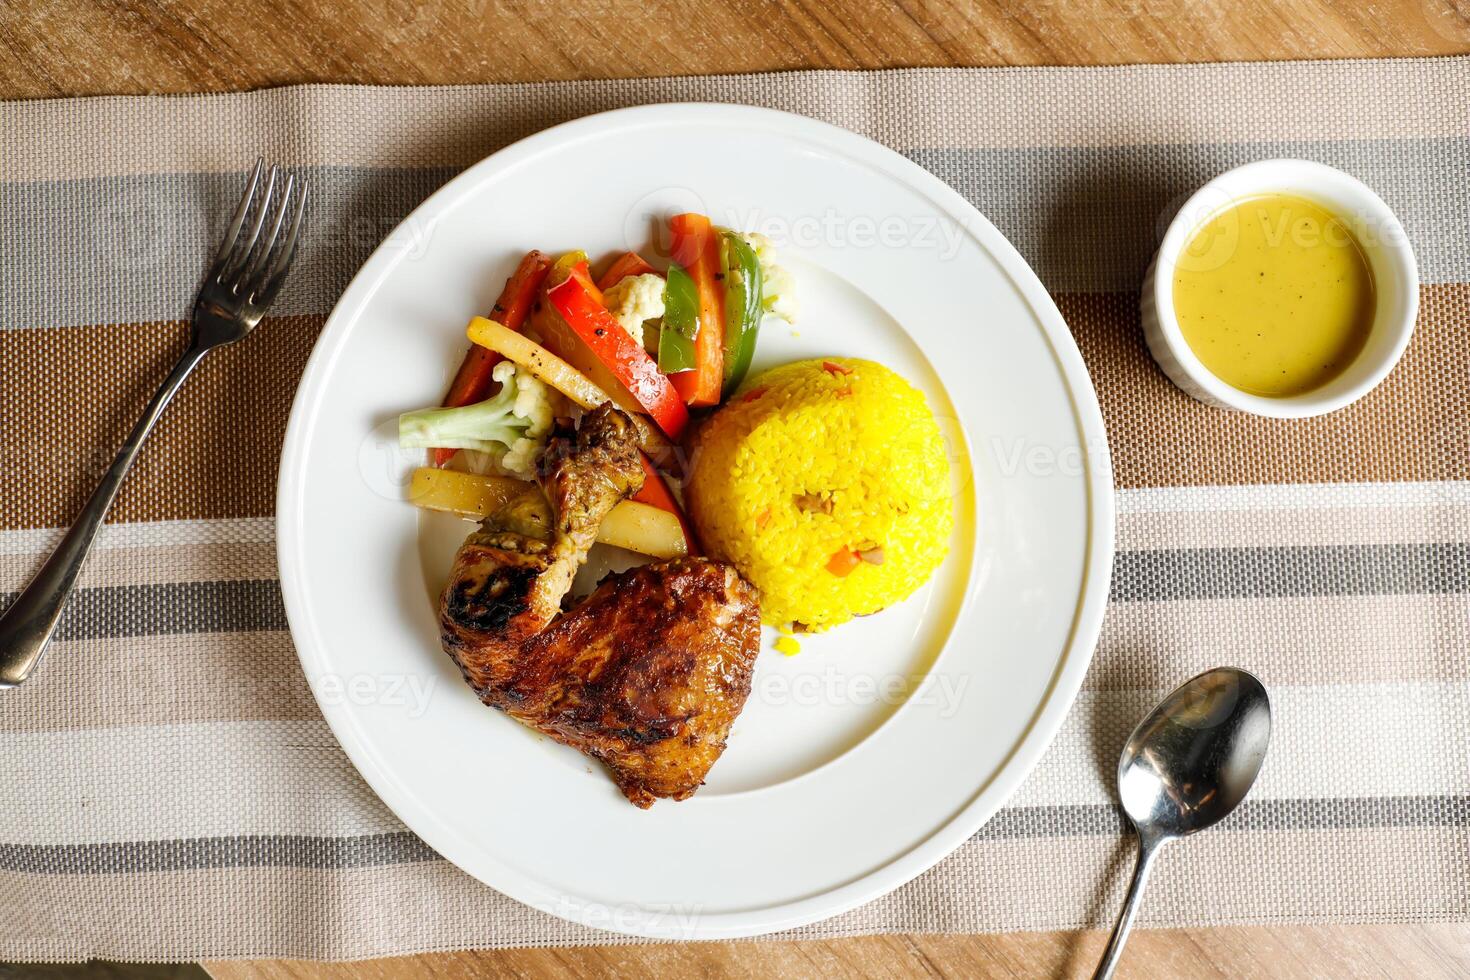 rôti poulet avec herbe riz avec salade, plonger, cuillère et fourchette servi sur assiette isolé sur serviette de table Haut vue de vite nourriture sur table photo